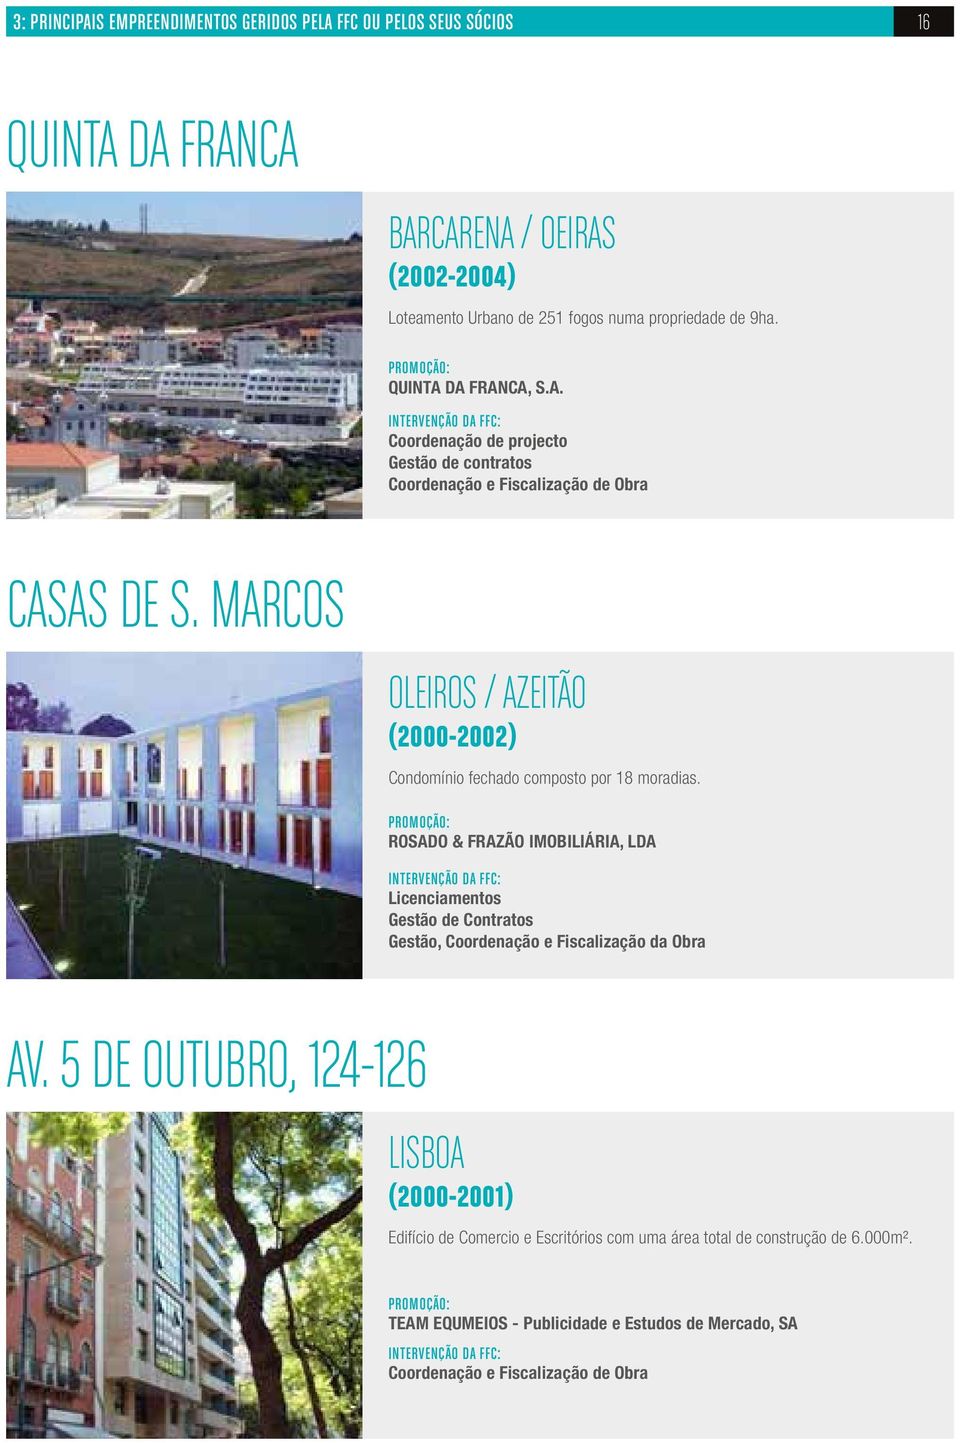 MARCOS OLEIROS / AZEITÃO (2000-2002) Condomínio fechado composto por 18 moradias.